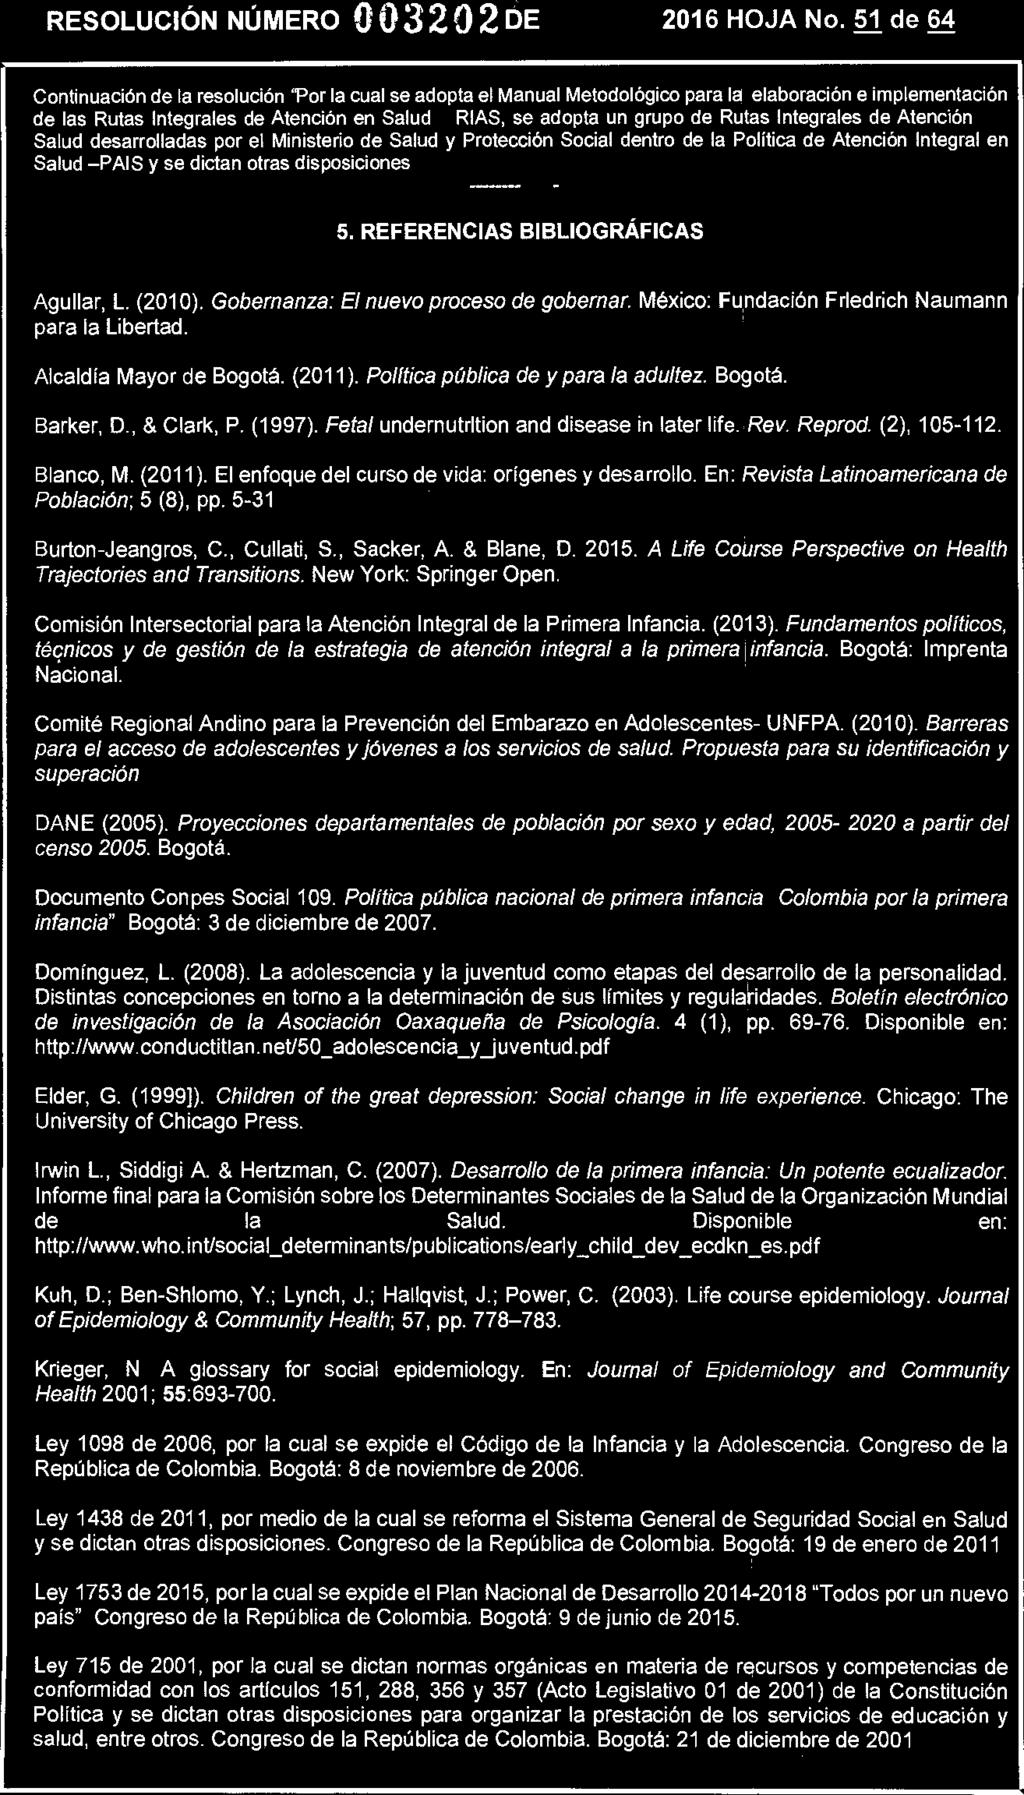 25 JUL 2016 RESOLUCIÓN NÚMERO 003202 DE 2016 HOJA No. 51 de 64 5. REFERENCIAS BIBLIOGRÁFICAS Aguilar, L. (2010). Gobemanza: El nuevo proceso de gobernar.